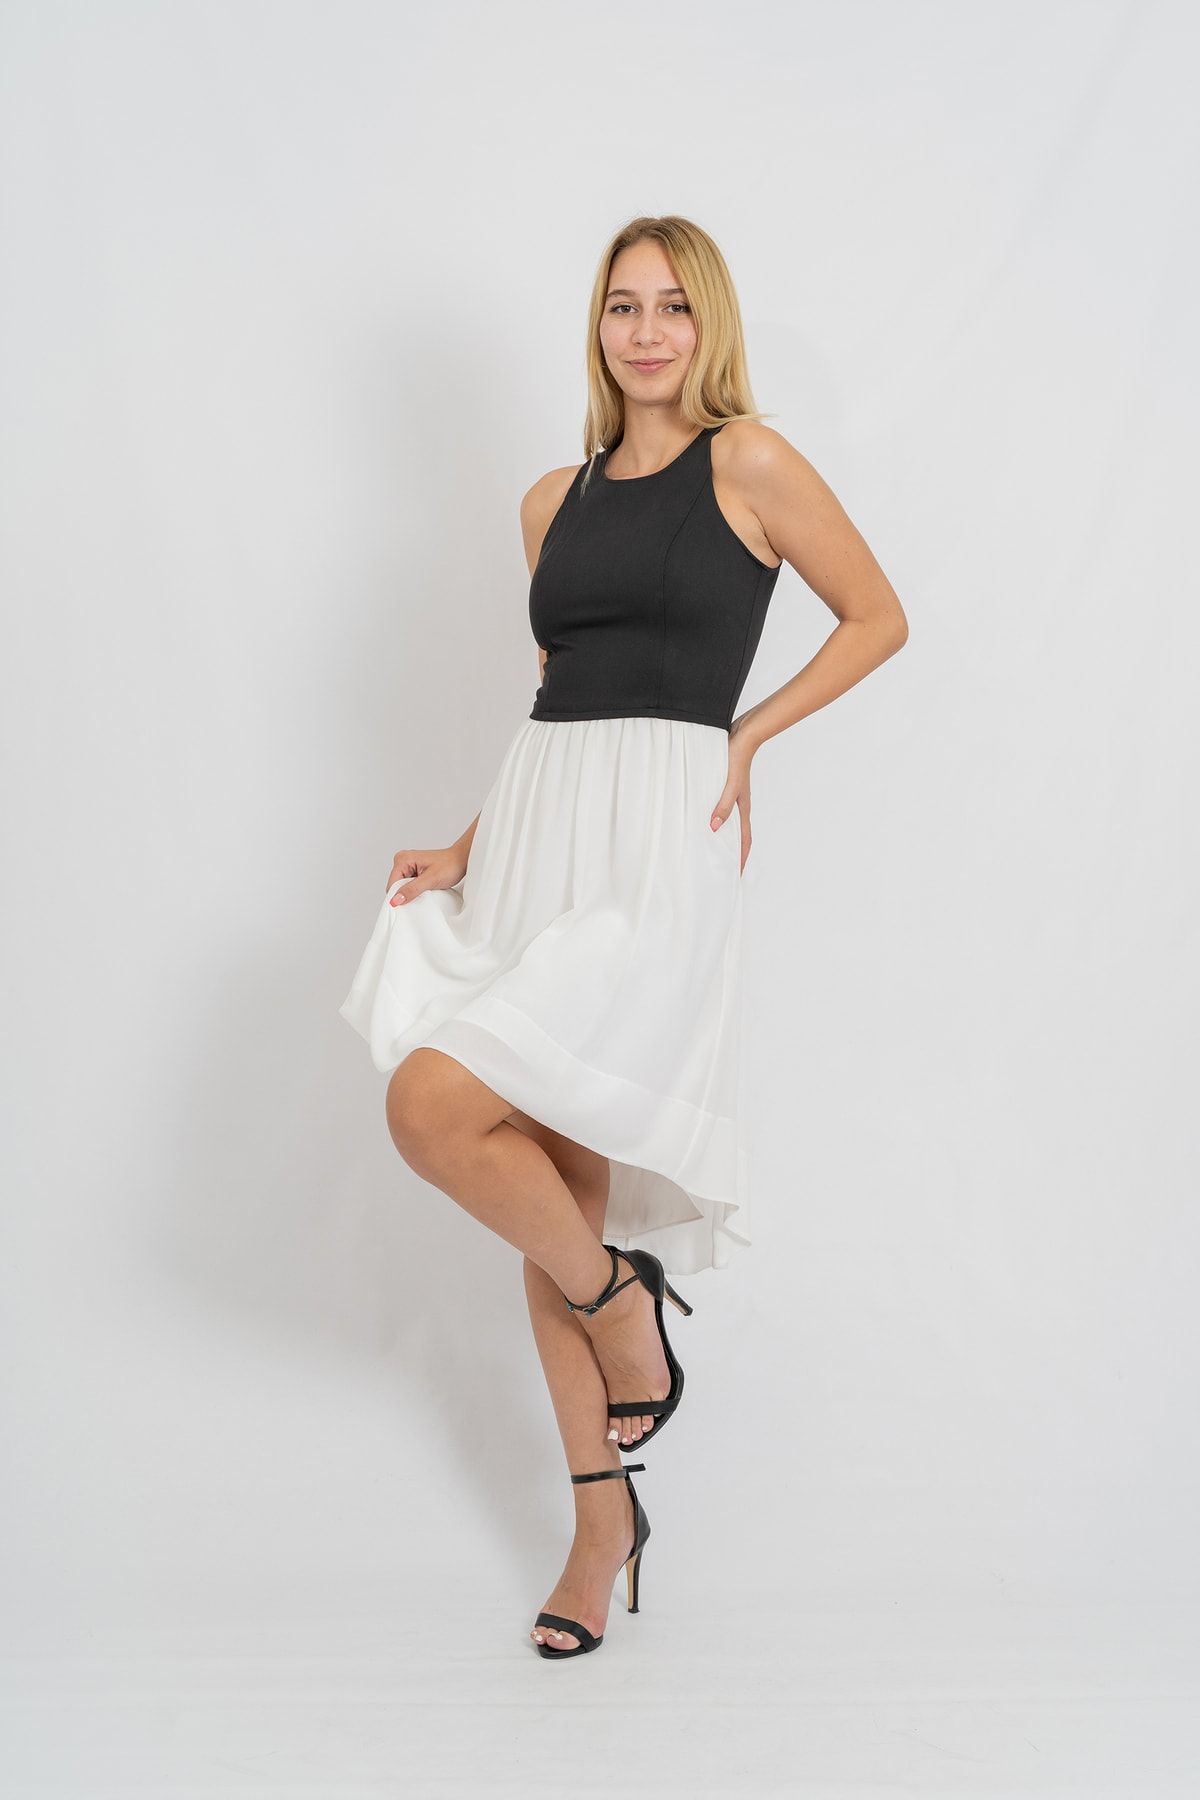 Bomestida Kadın Siyah Beyaz Önü Kısa Arkası Uzun Askılı Elbise